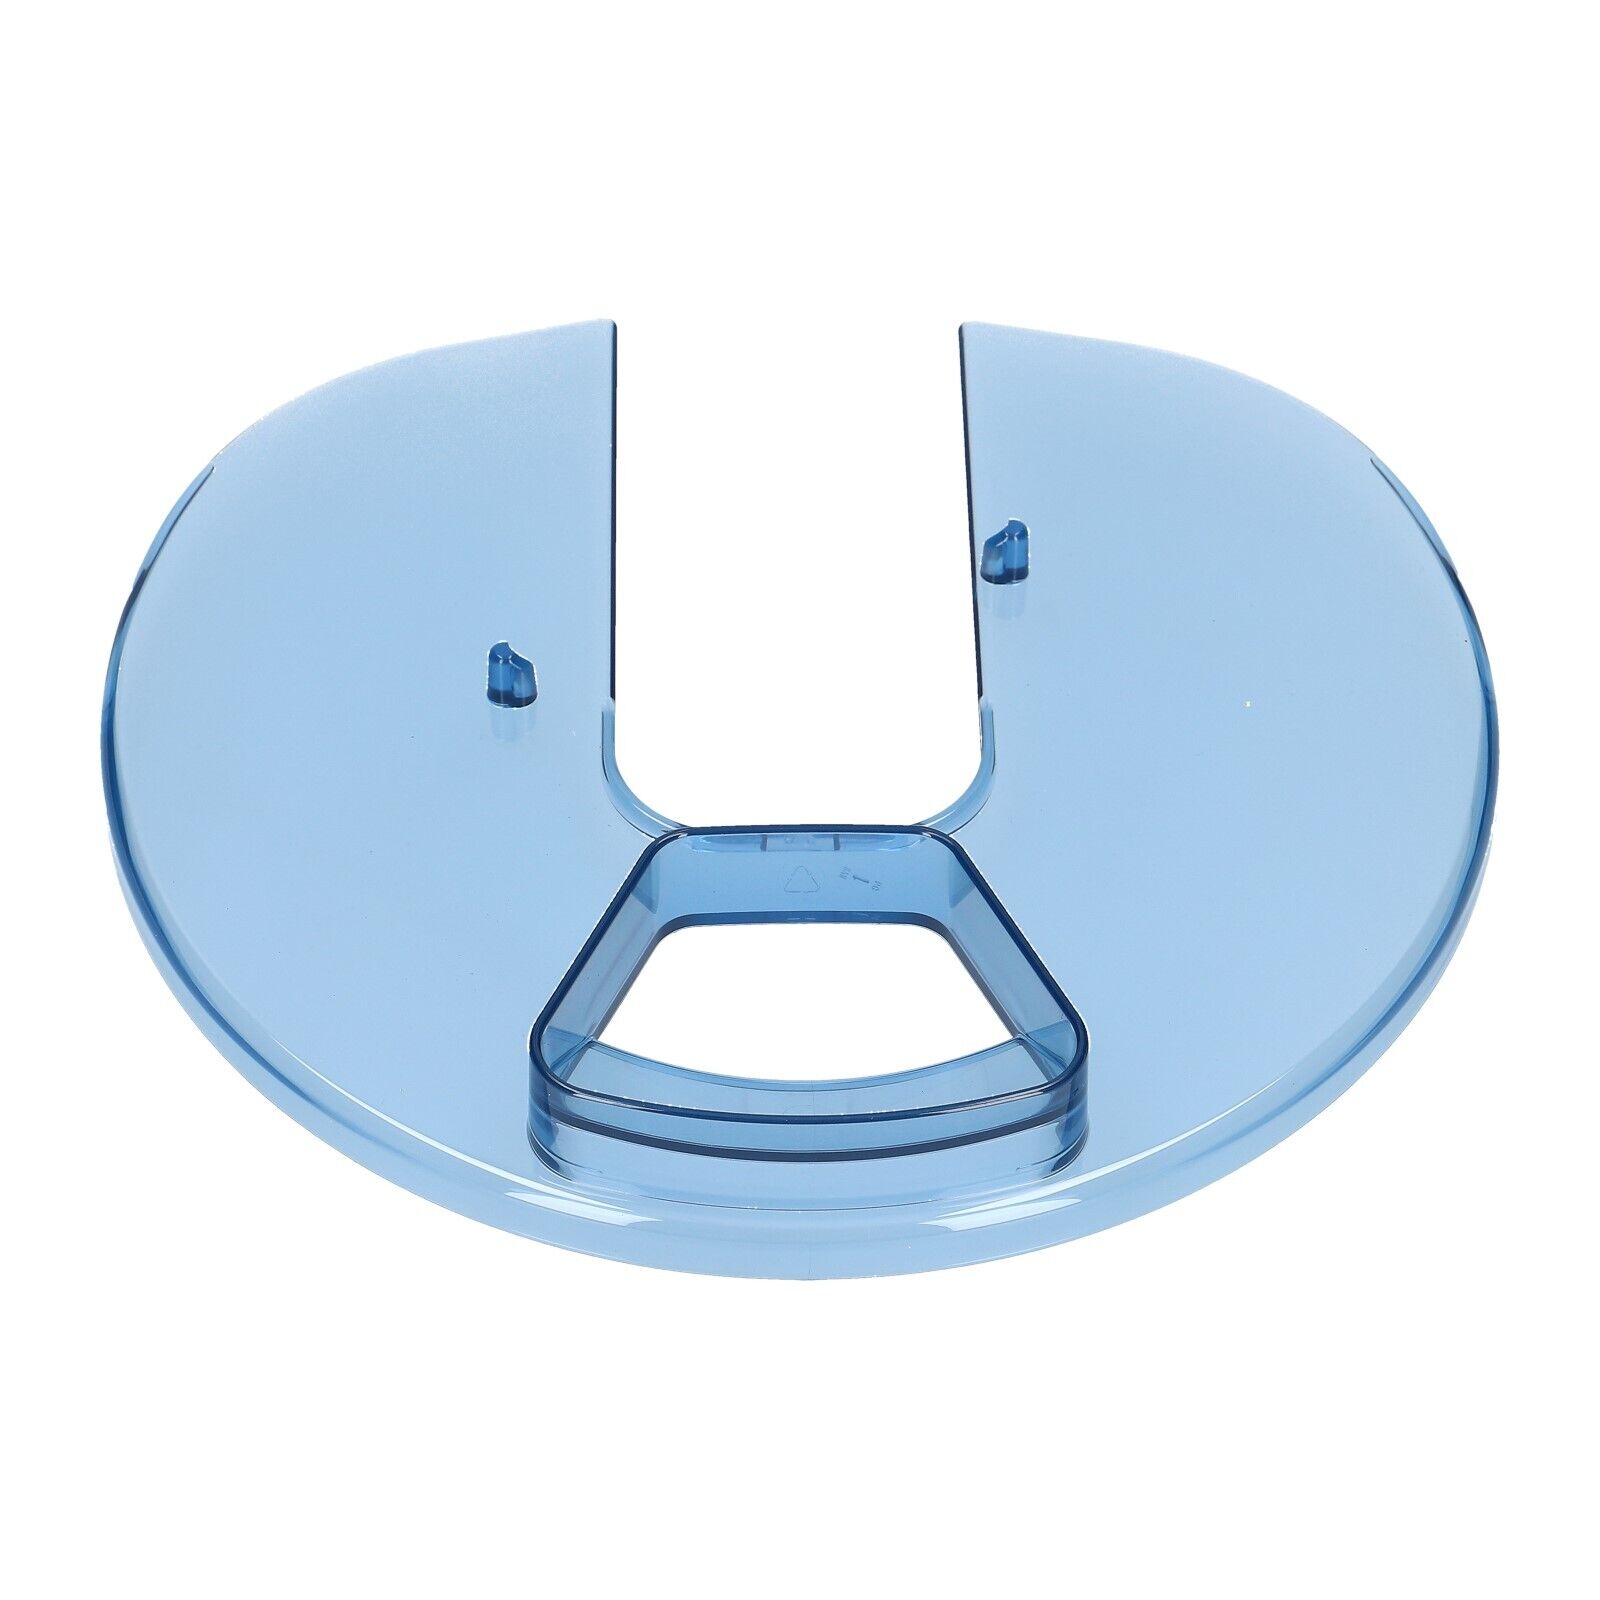 Deckel für Rührschüssel an Küchenmaschinen kompatibel mit Bosch 482103 00482103